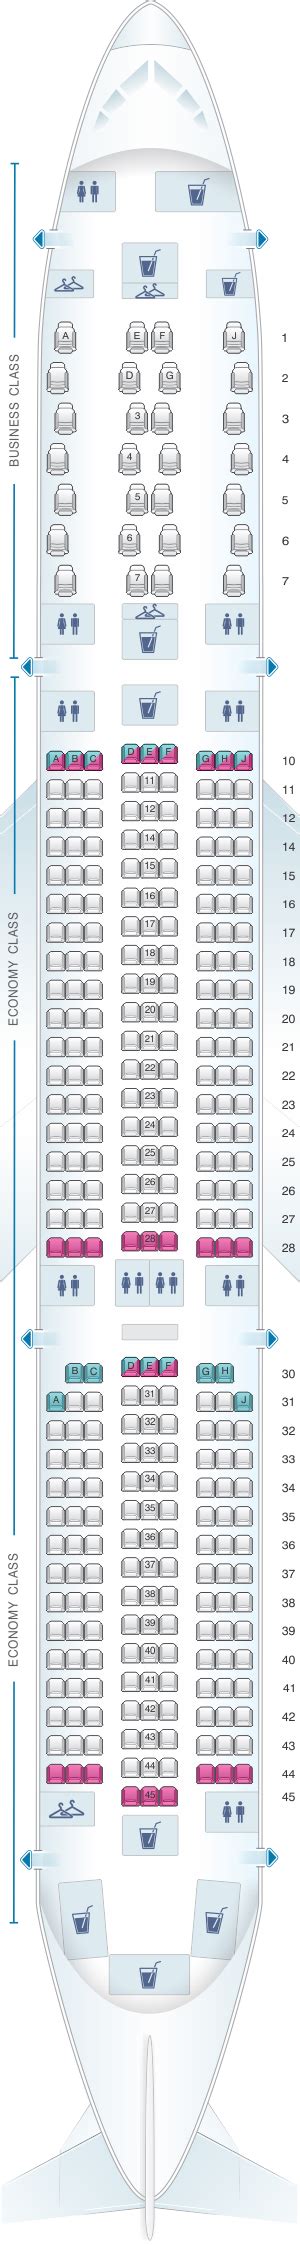 Air Mauritius A350 Seat Map